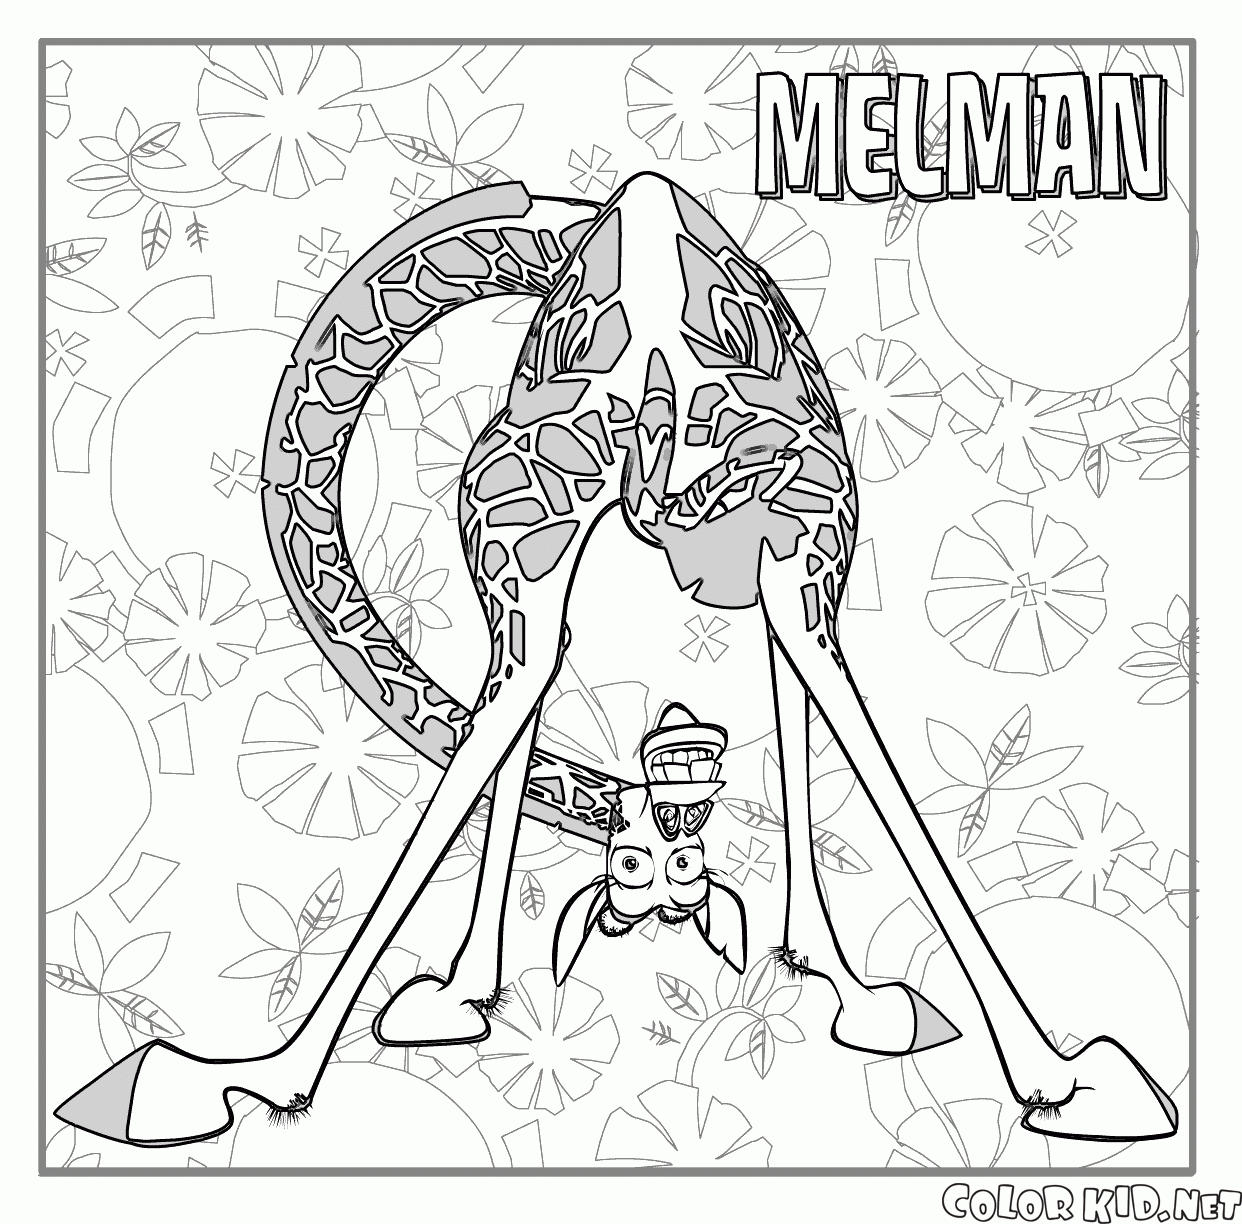 Melman la Jirafa